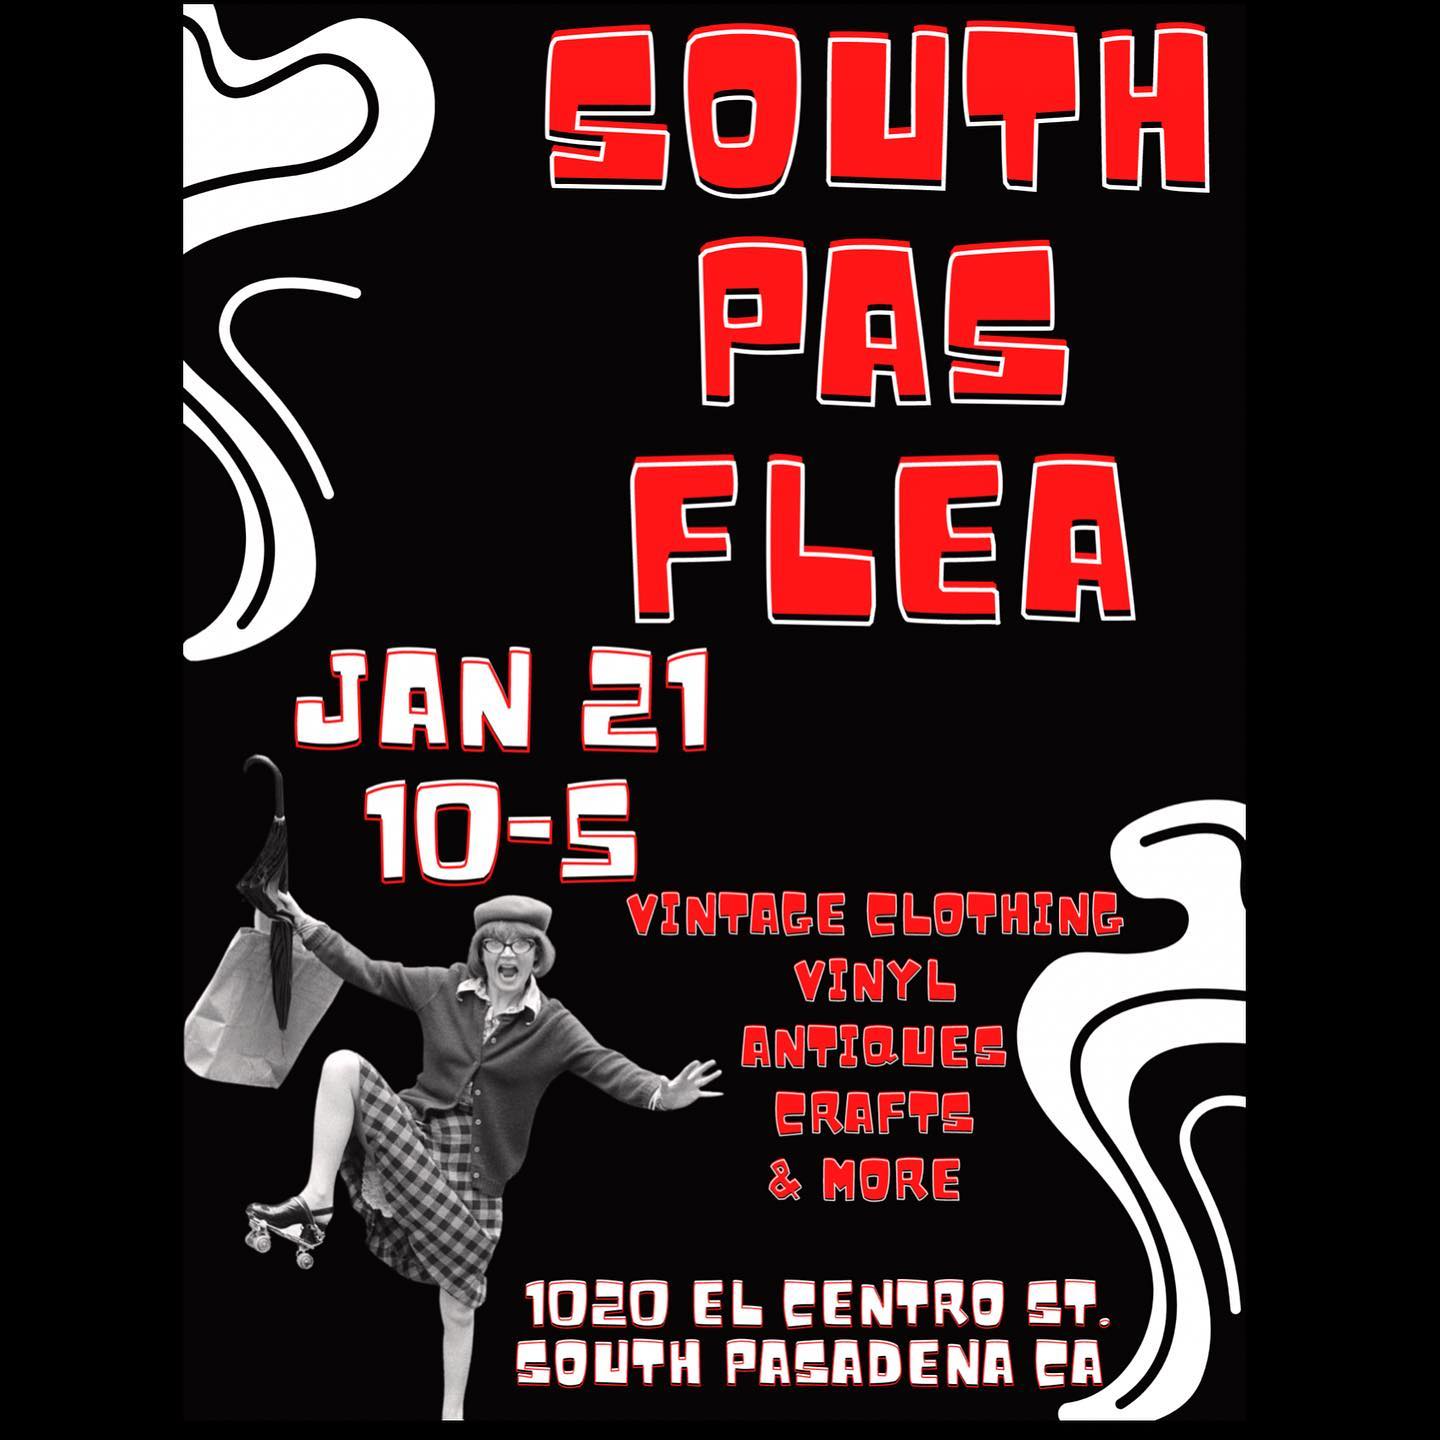 South Pasadena Flea